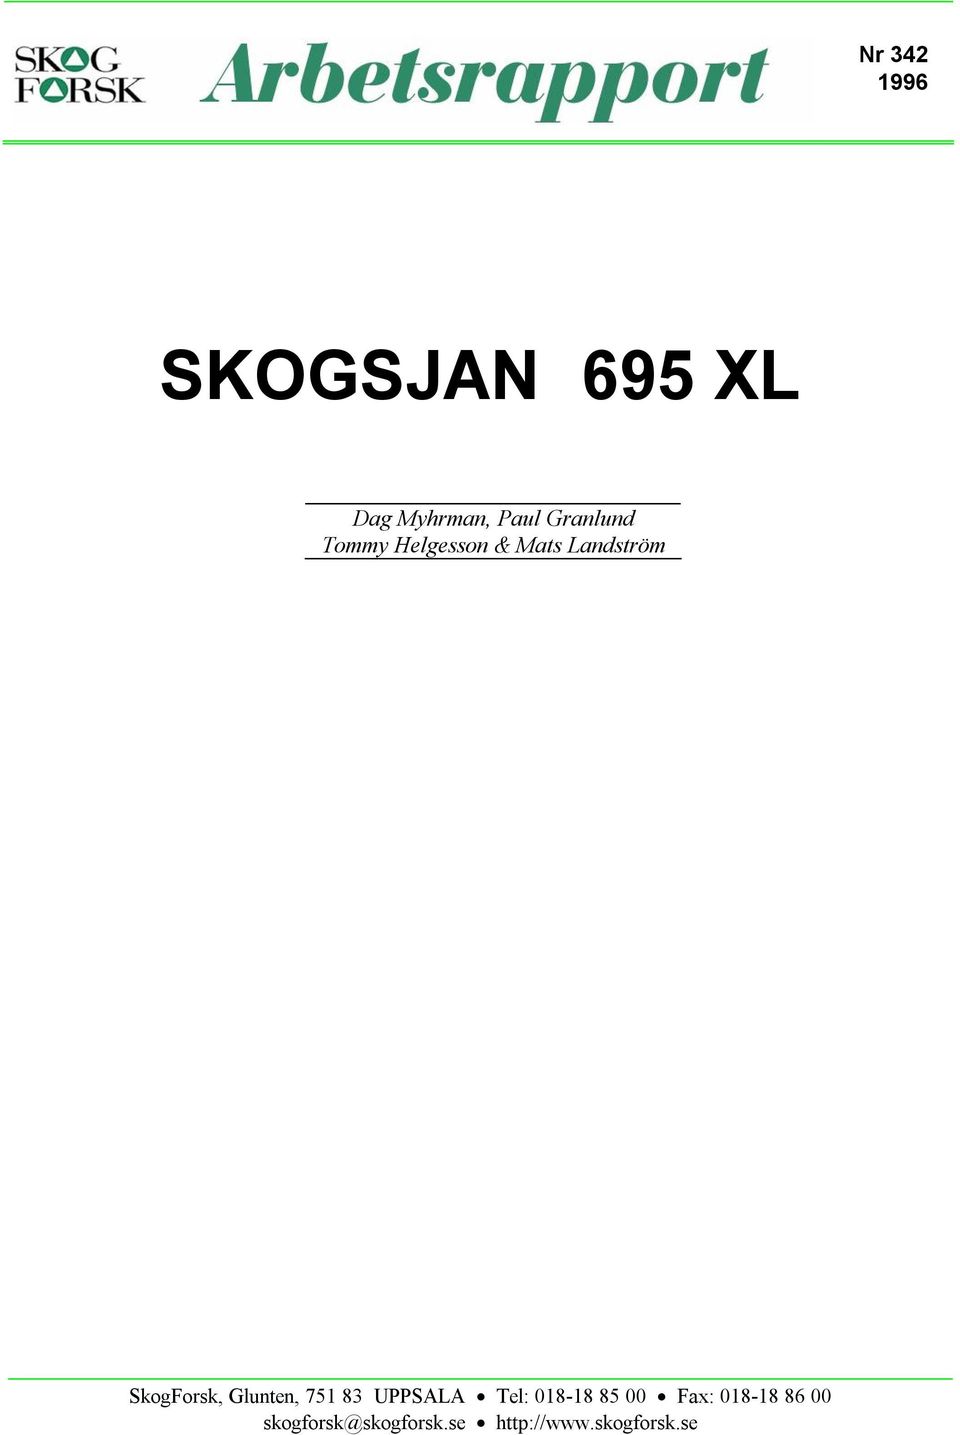 SkogForsk, Glunten, 751 83 UPPSALA Tel: 018-18 85